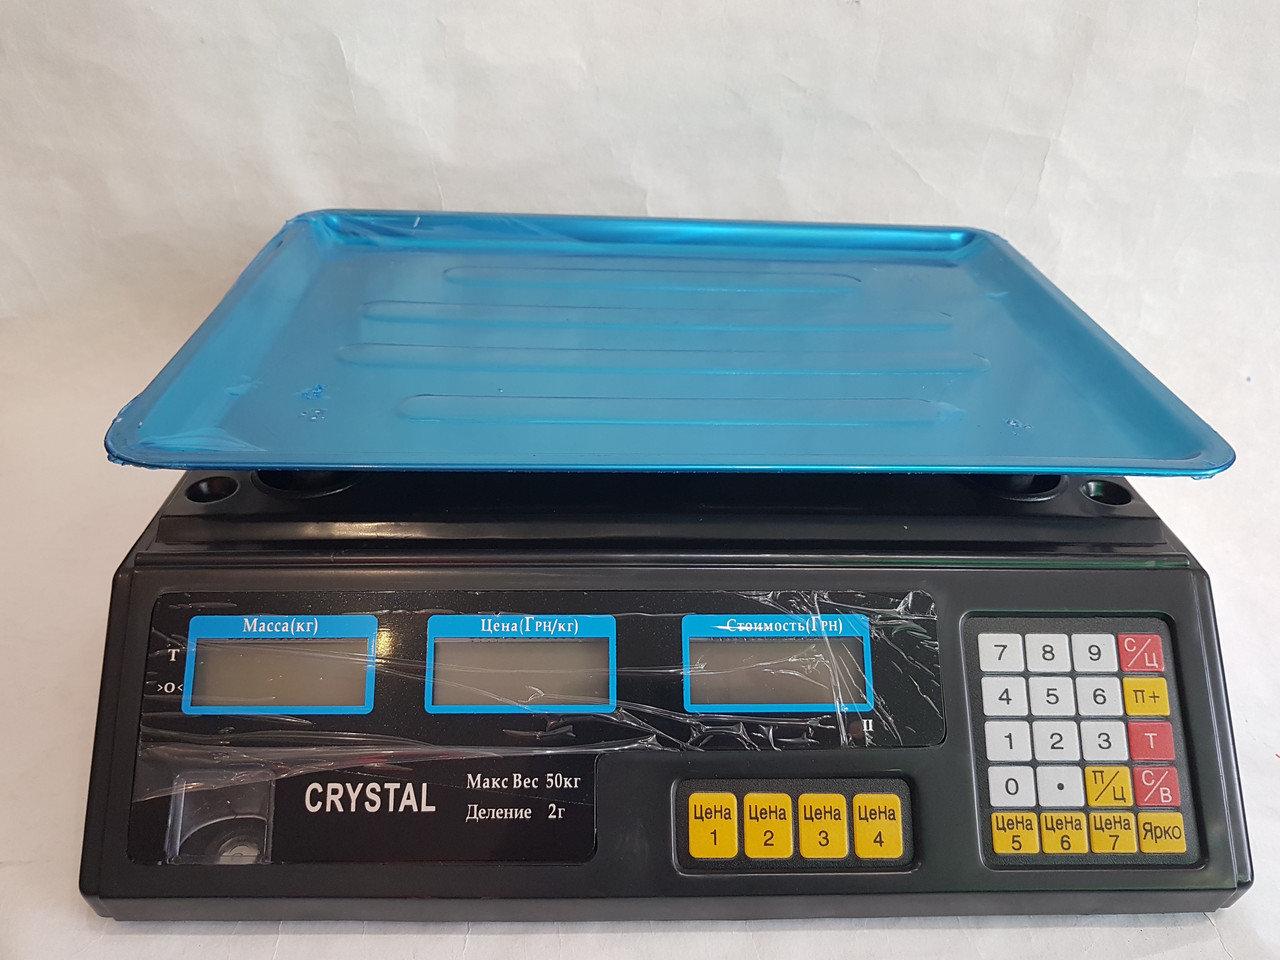 Весы Crystal 50 kg электронные настольные весы с калькулятором торговые